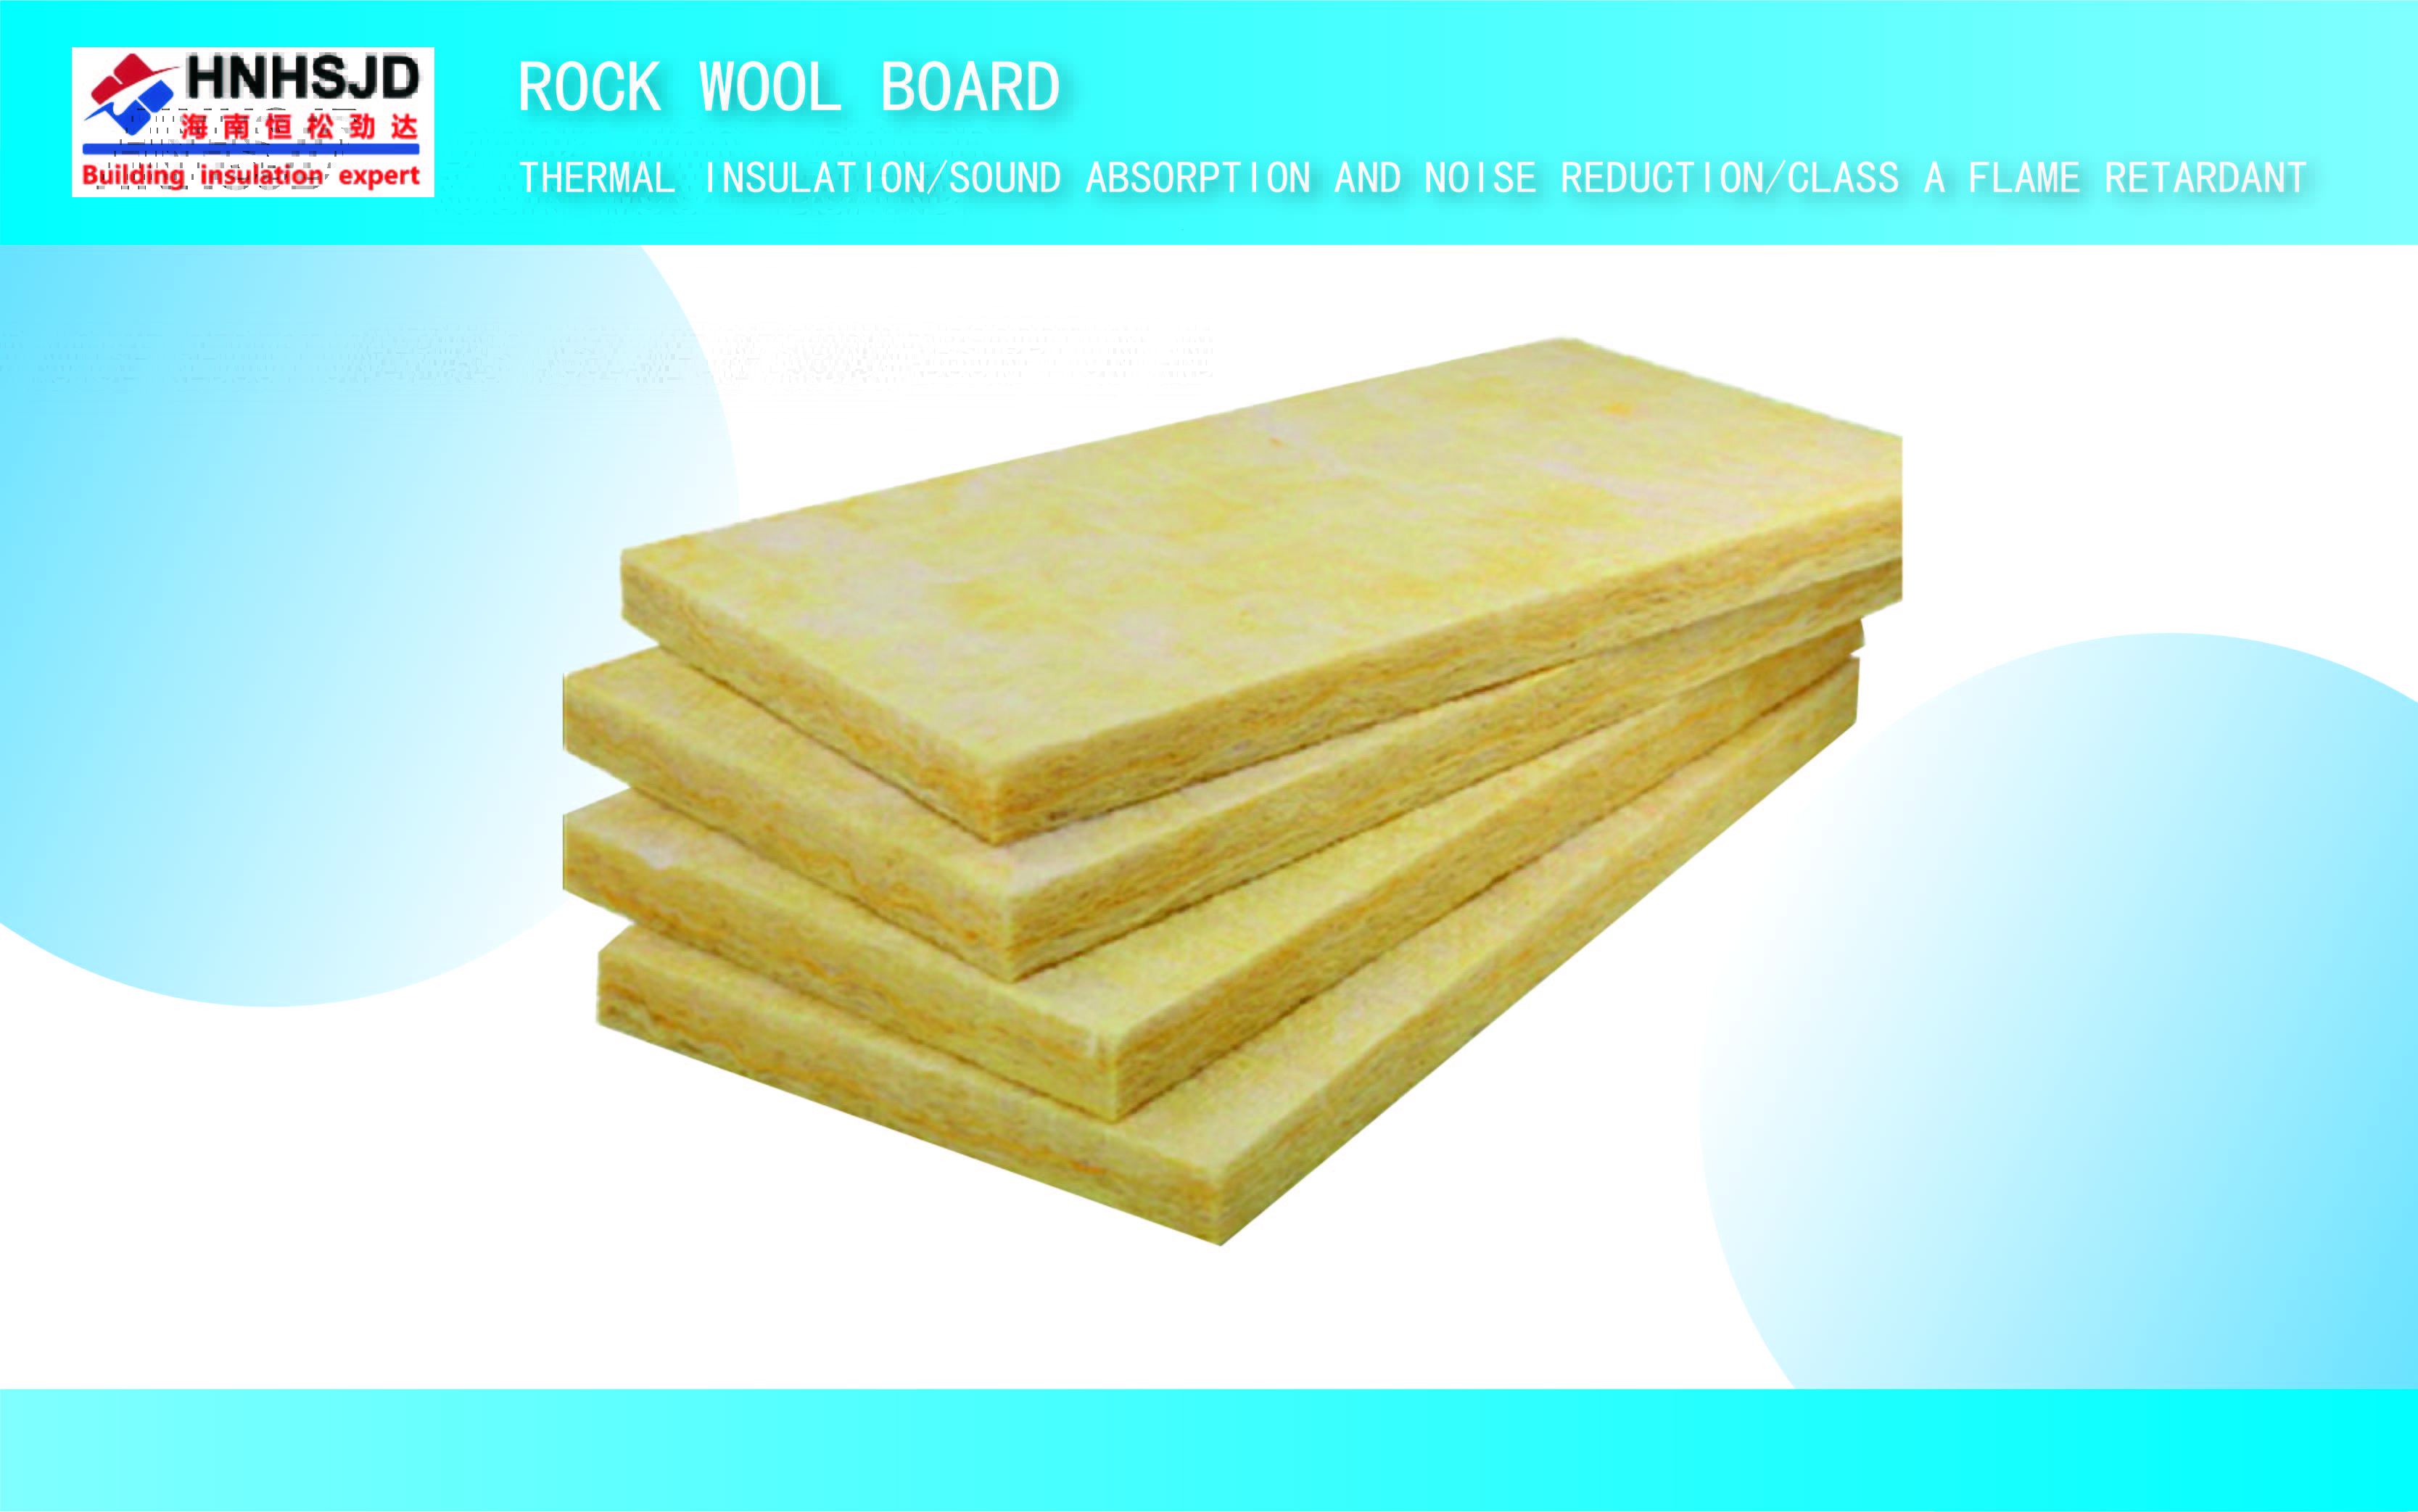 Rock wool board